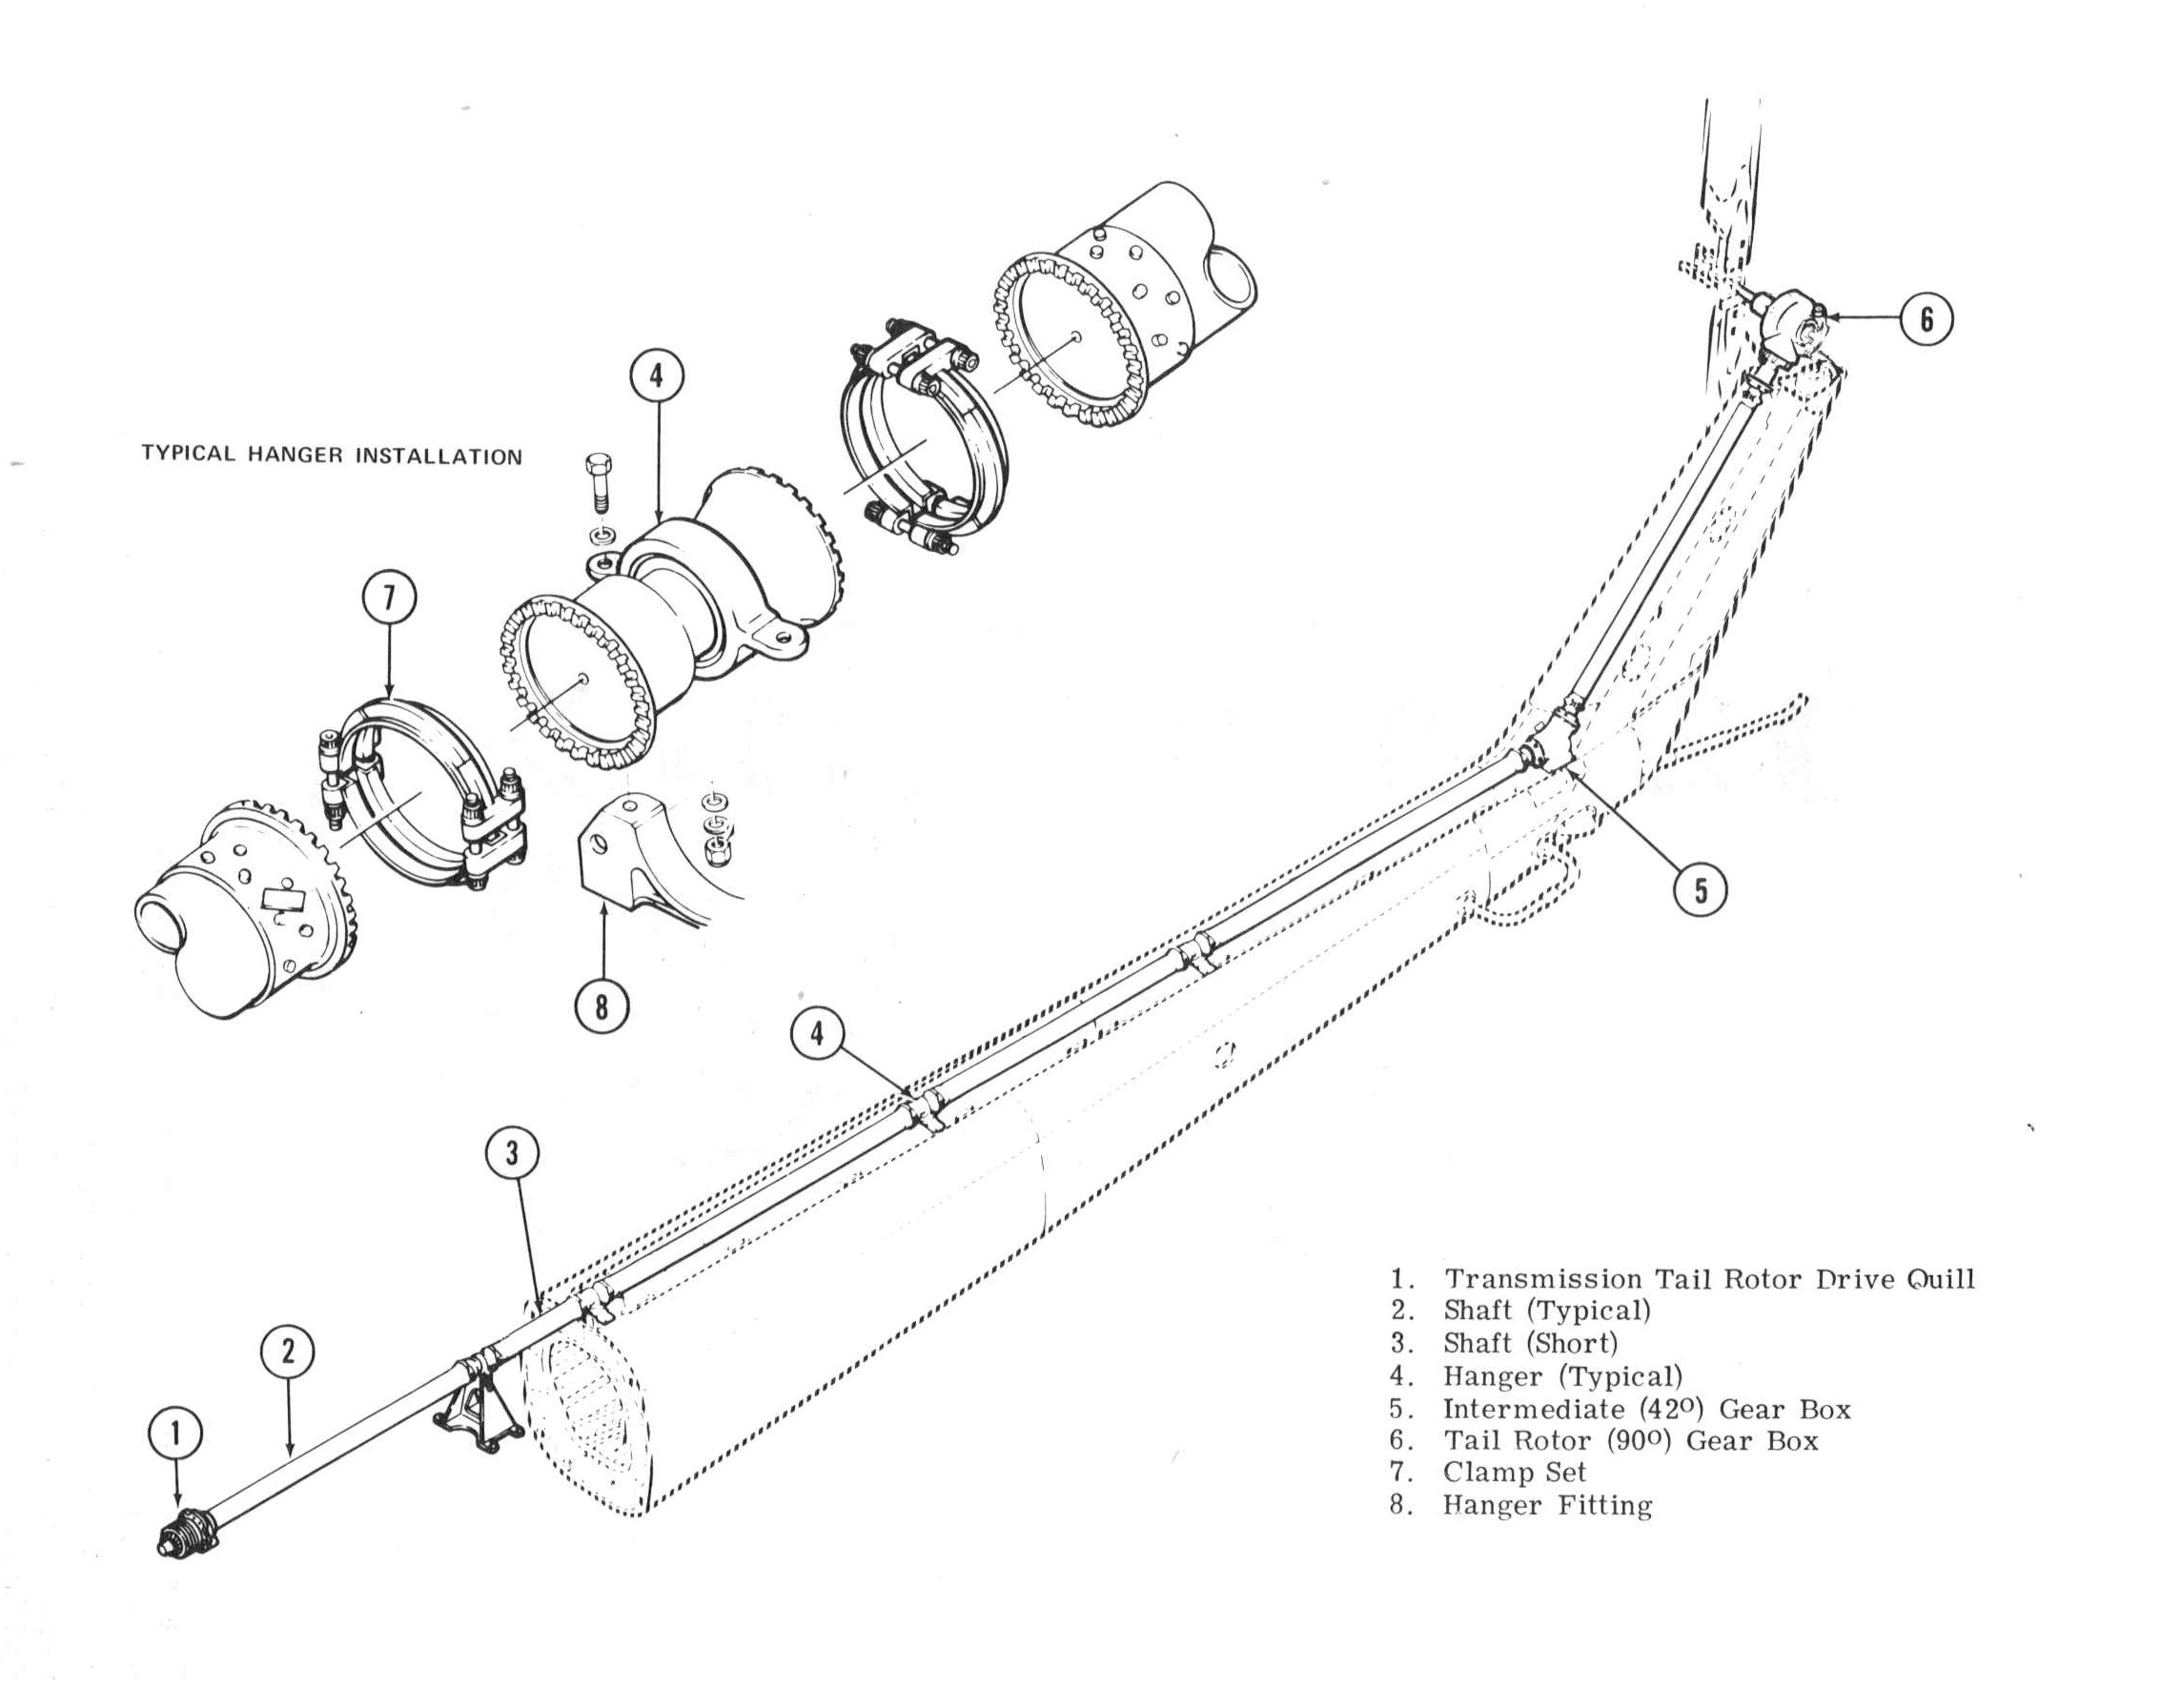 Bell Model 205A-1 Image Downloads elevator governor diagram 